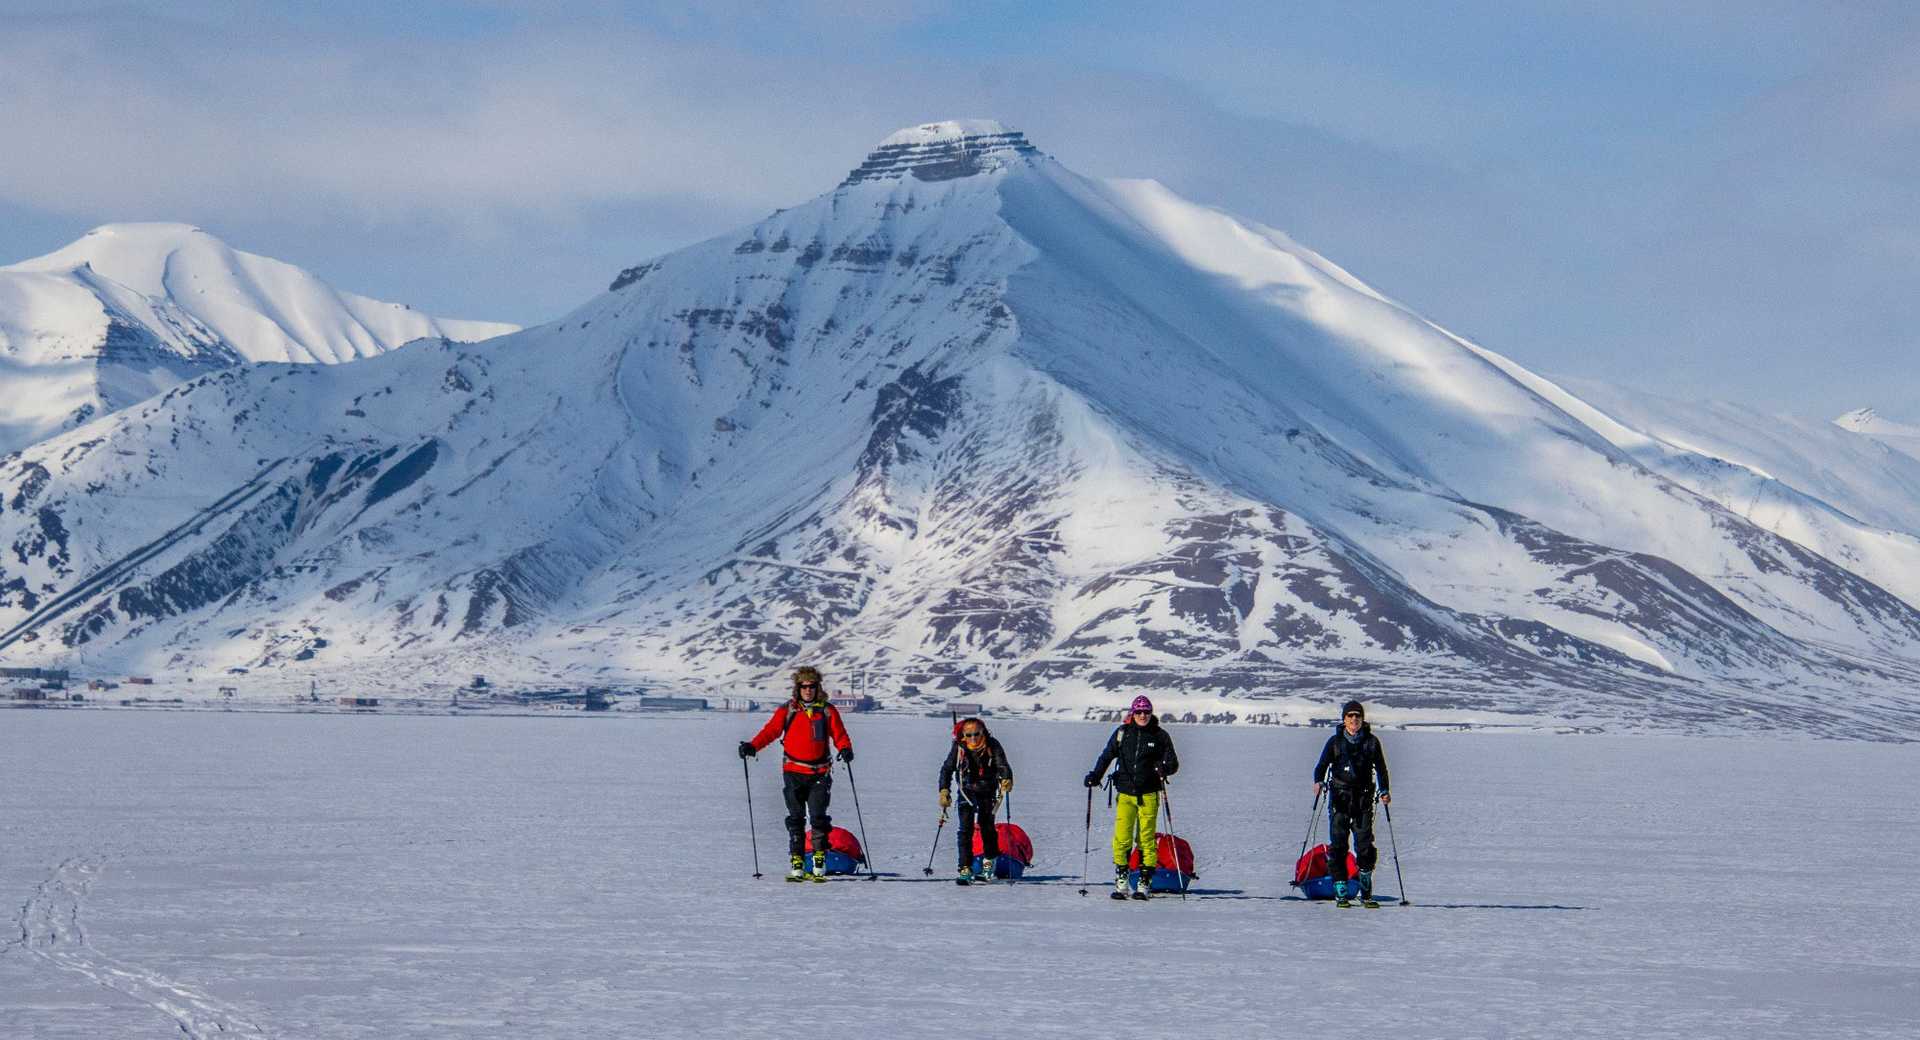 Aventure en ski de rando dans les montagnes du Grand Nord